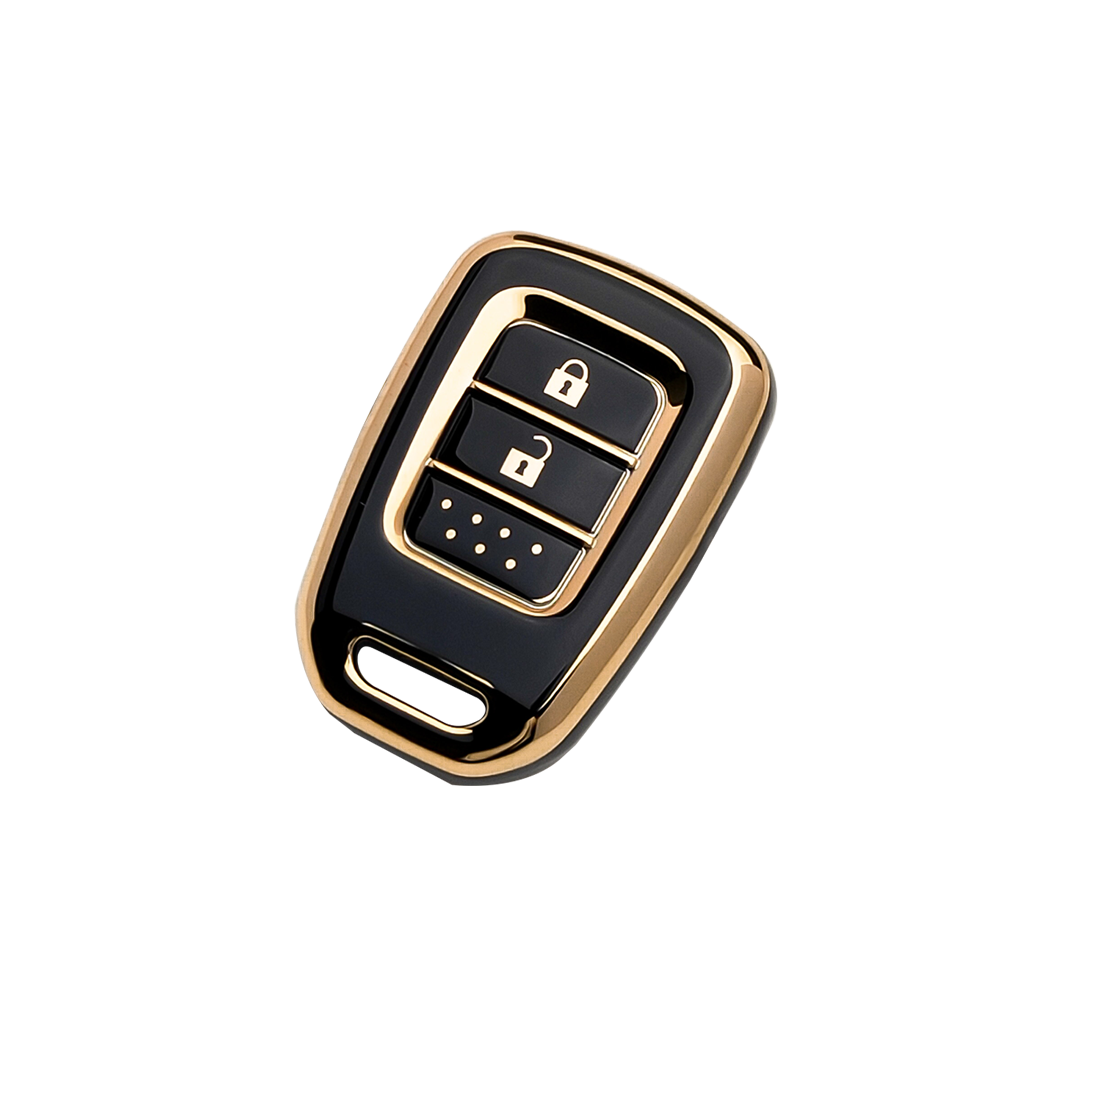 Acto TPU Gold Series Car Key Cover For Honda Mobilio